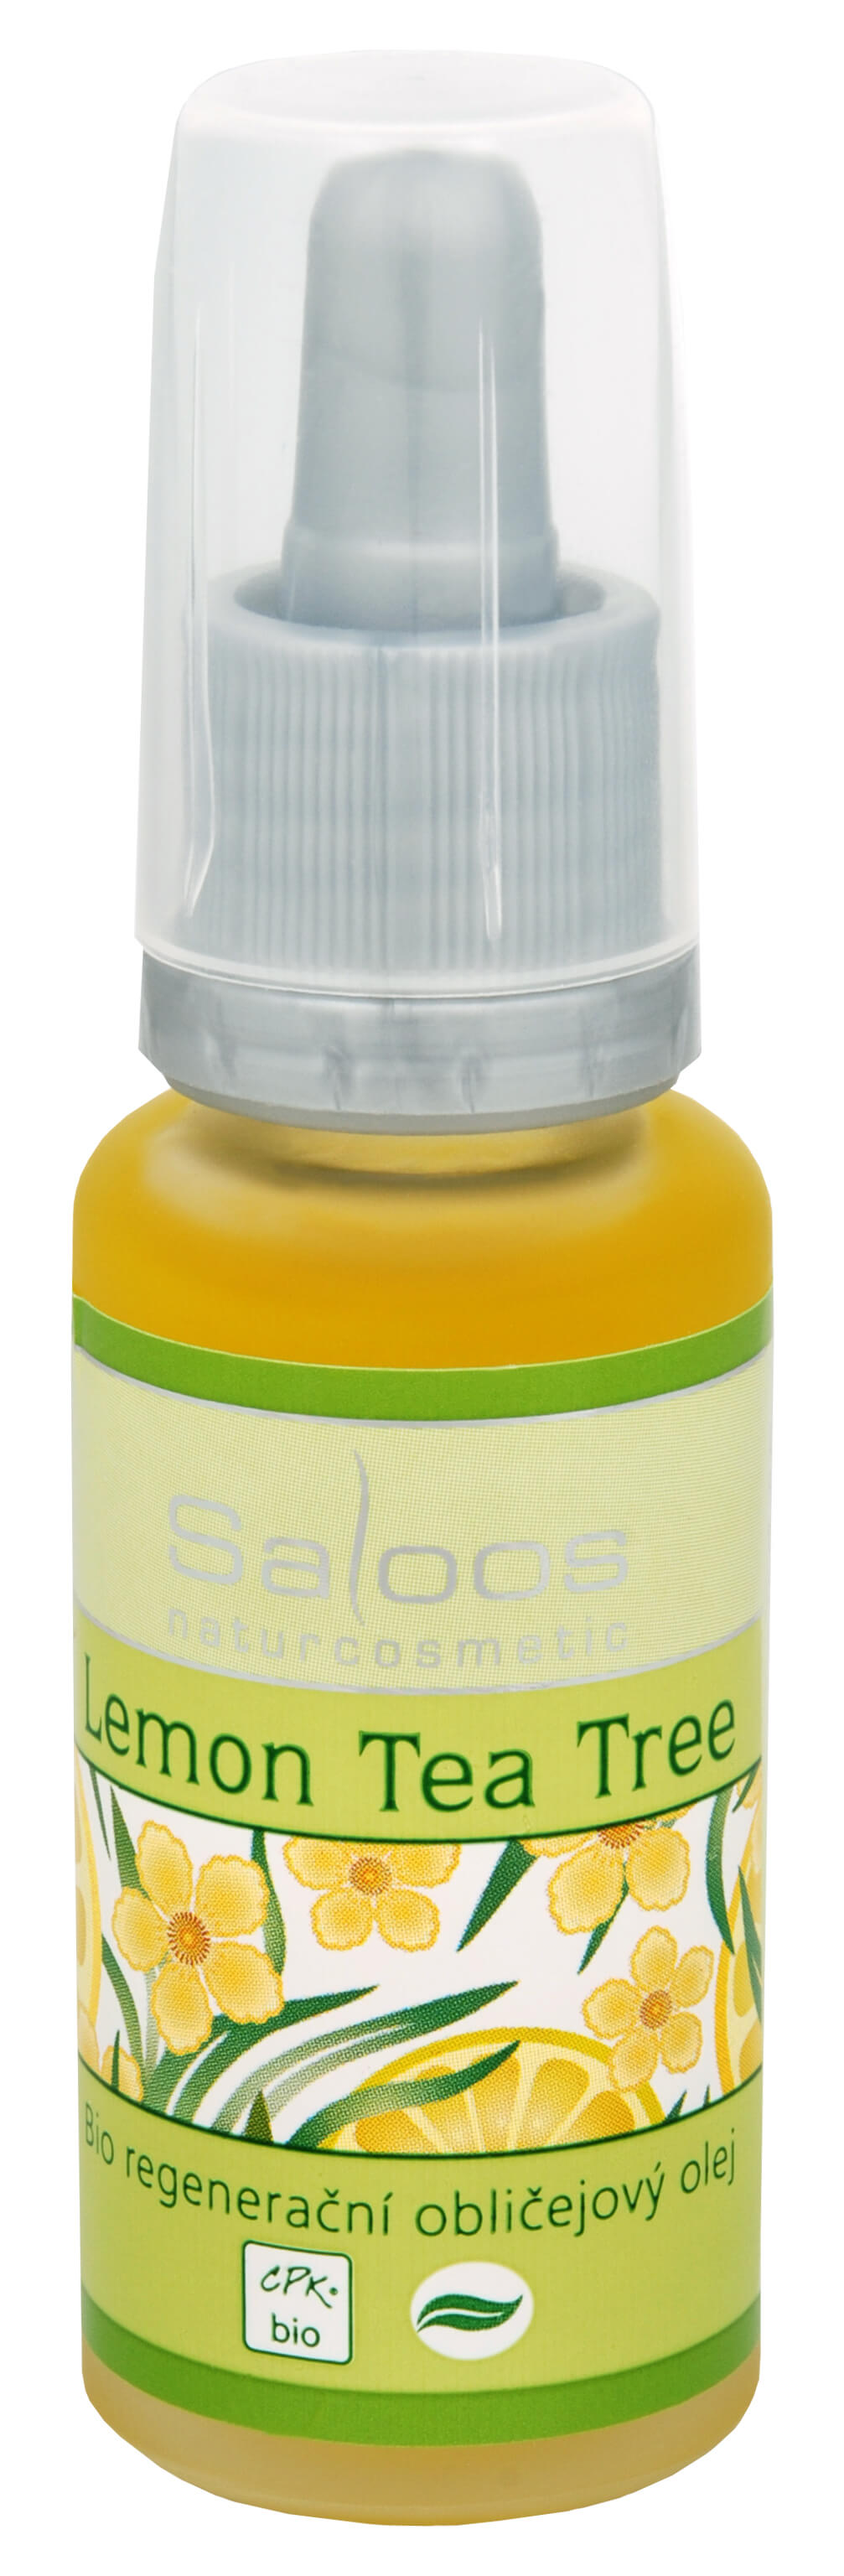 Zobrazit detail výrobku Saloos Bio regenerační obličejový olej - Lemon tea tree 20 ml + 2 měsíce na vrácení zboží